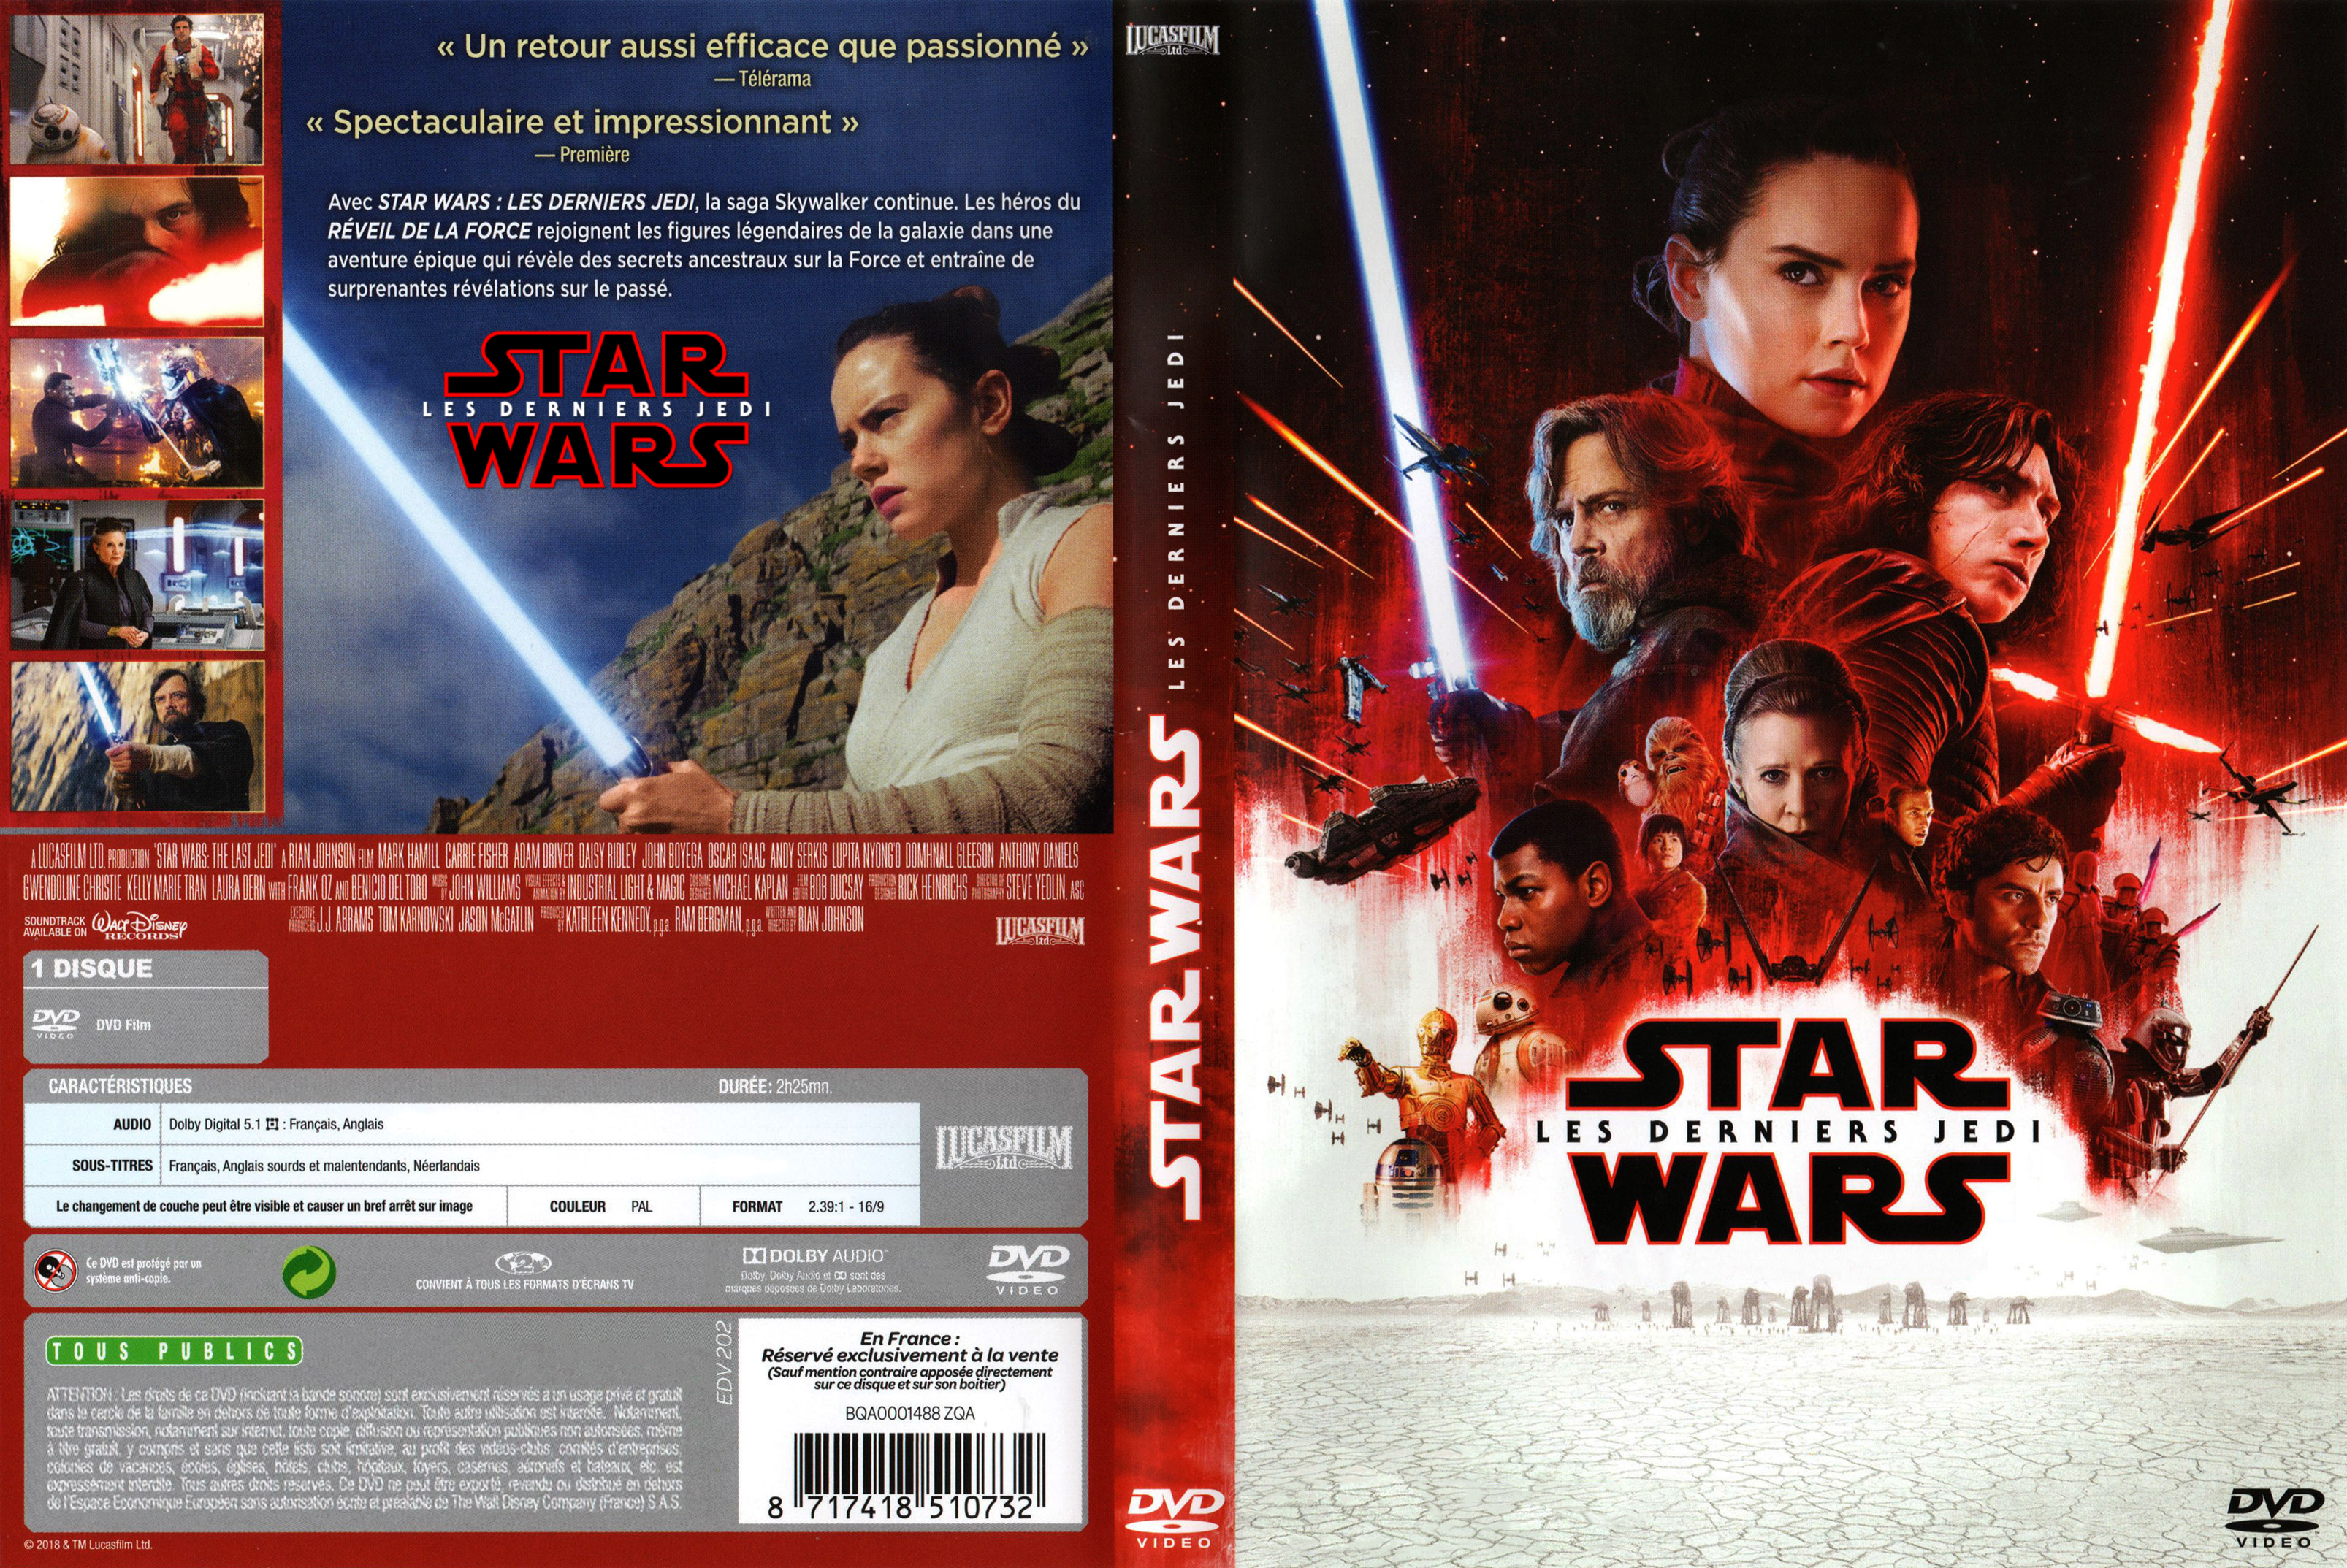 Jaquette DVD Star Wars VIII Les derniers Jedi custom